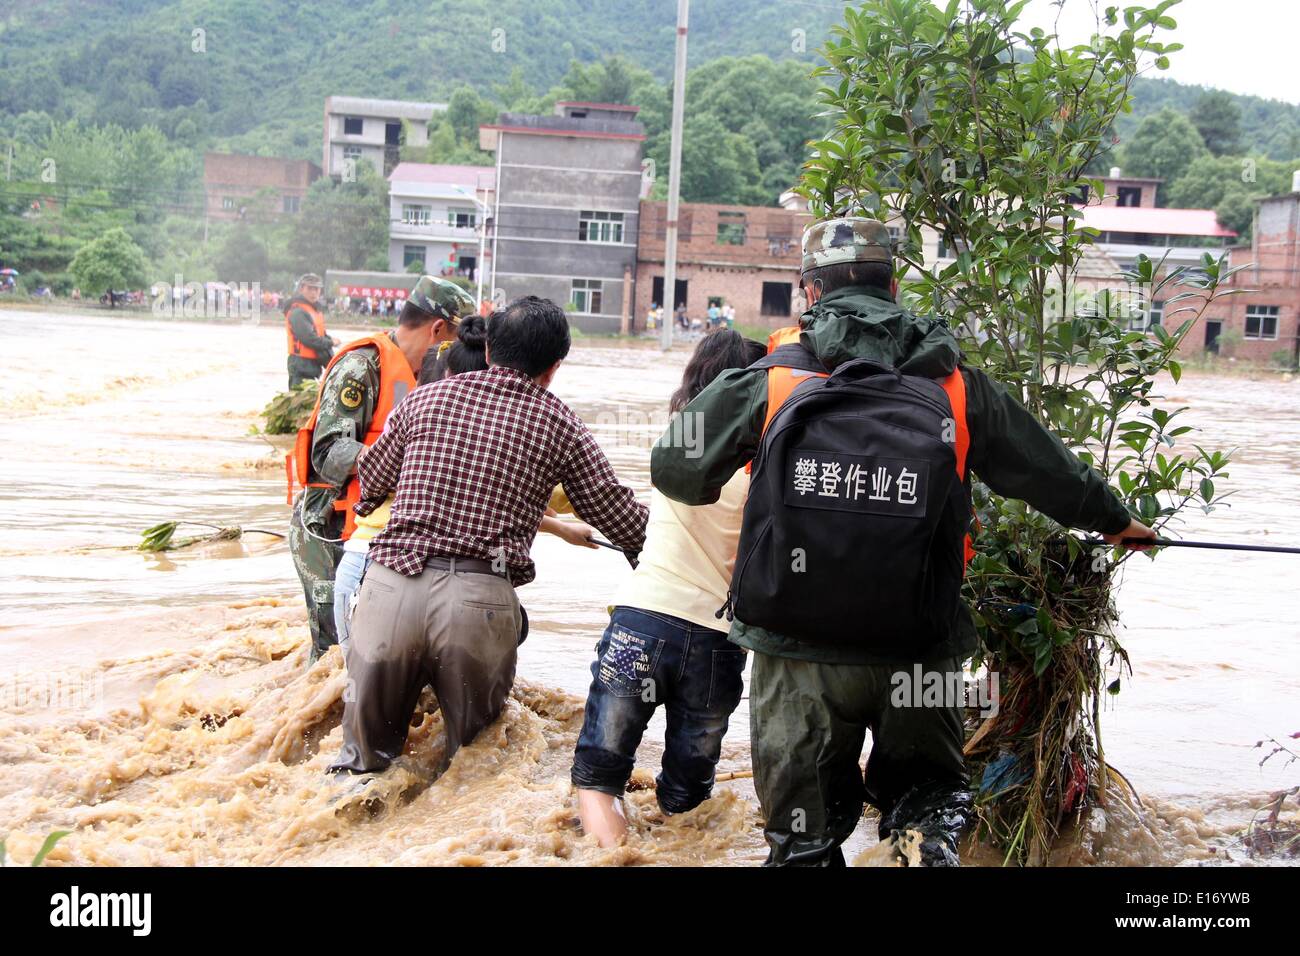 Pechino, Cina della provincia di Jiangxi. 25 Maggio, 2014. Soccorritori evacuare intrappolato gli abitanti di un villaggio come le alluvioni costeggia Hongdong villaggio di Tongmu township di Città Pingxiang, Cina orientale della provincia di Jiangxi, 25 maggio 2014. Gli acquazzoni spazzato Jiangxi dalle 8 a.m. 24 maggio alle 8 del mattino Maggio 25. Circa 5 mila residenti nella città Pingxiang erano intrappolati da inondazioni come del mezzogiorno Domenica dopo più di 4 mila abitanti sono stati evacuati. Credito: Xie Shushun/Xinhua/Alamy Live News Foto Stock